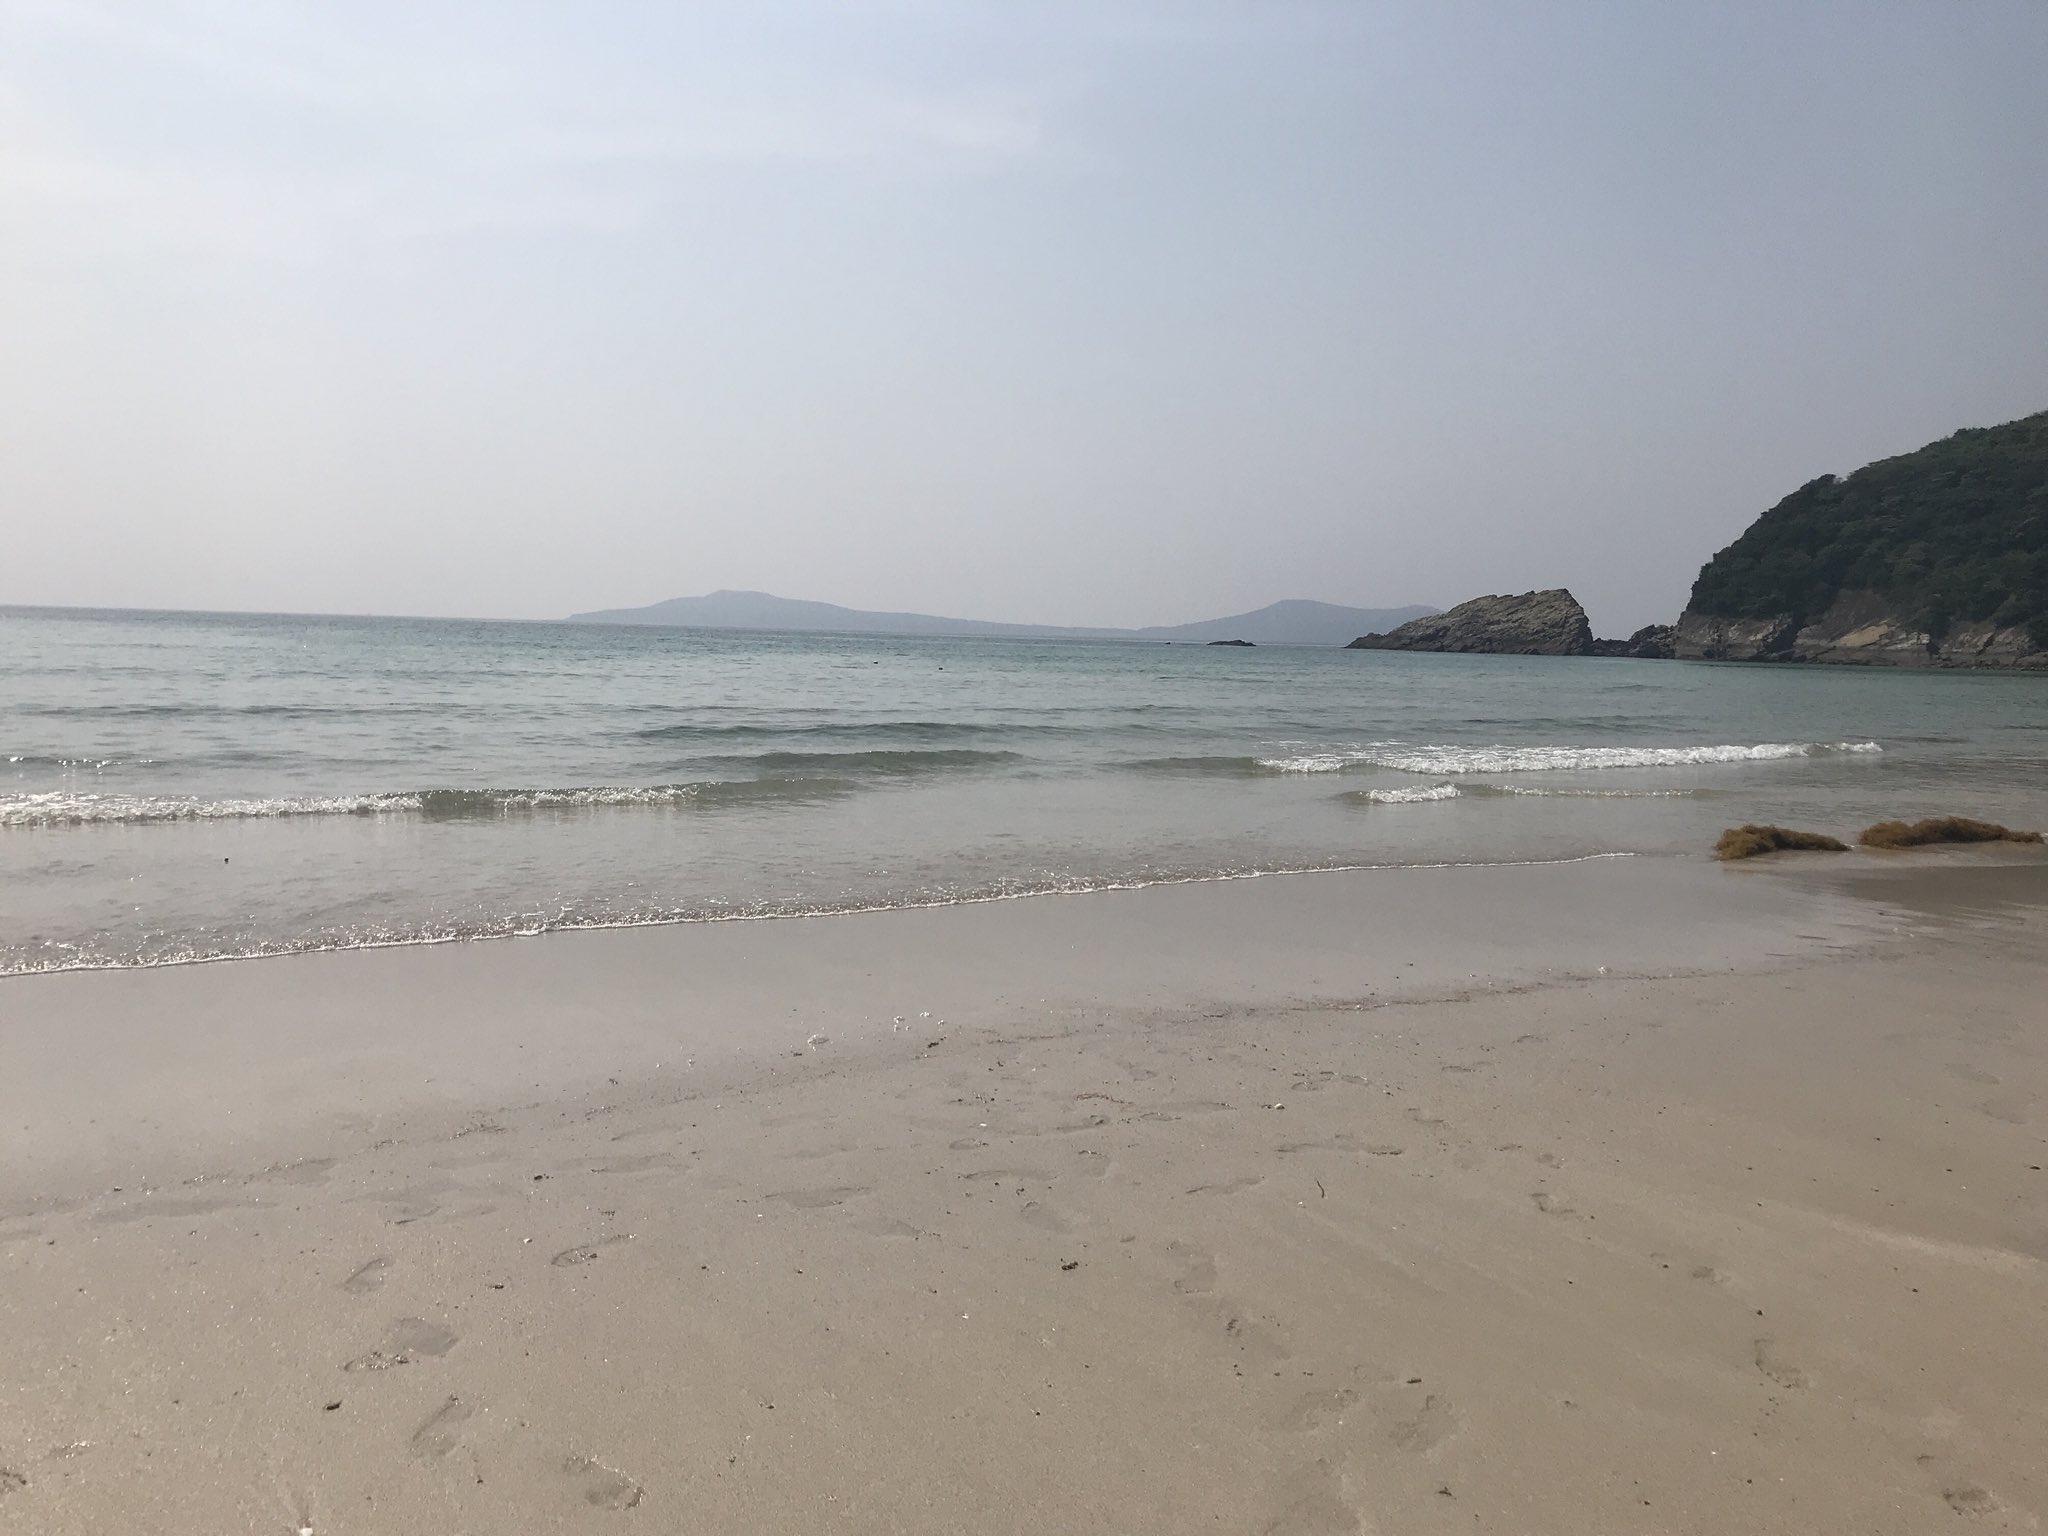 Emma 高浜海水浴場有著 日本第一美麗海灘 之稱 由群山環繞圍的海灘有著高透明度的海水 及閃閃發亮著的白砂 從附近